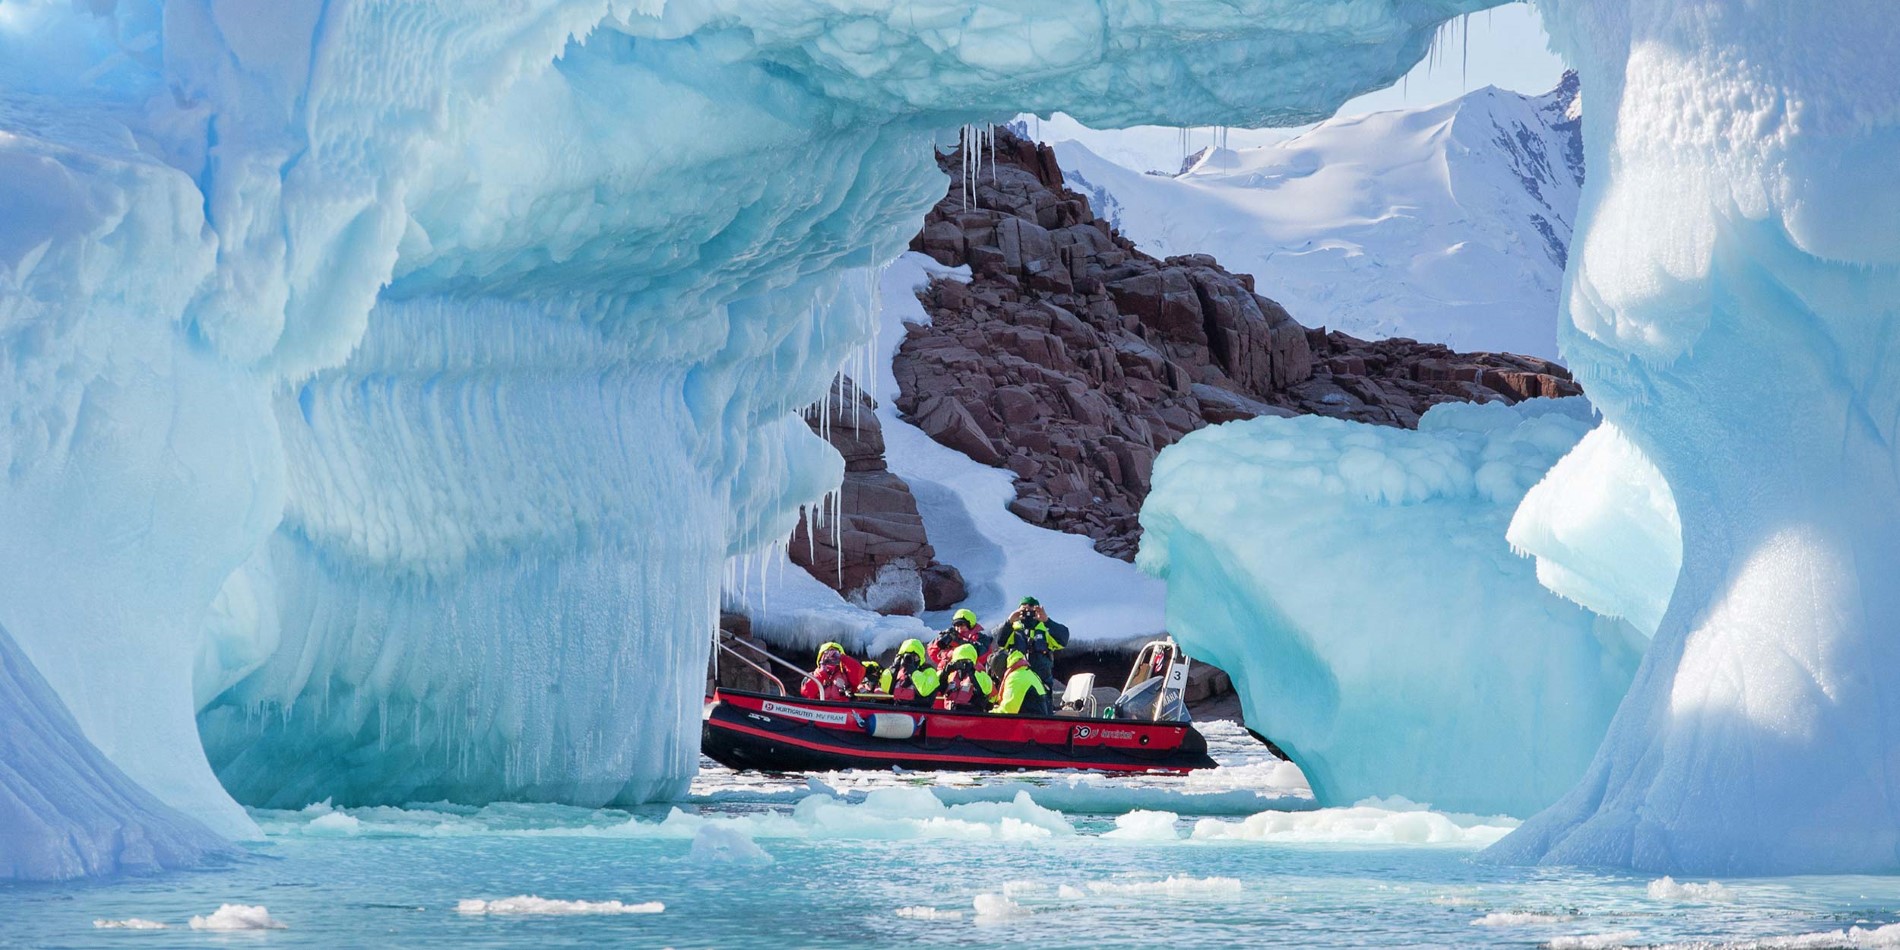 Gruppe af turister i lille båd blandt spektakulære isformationer